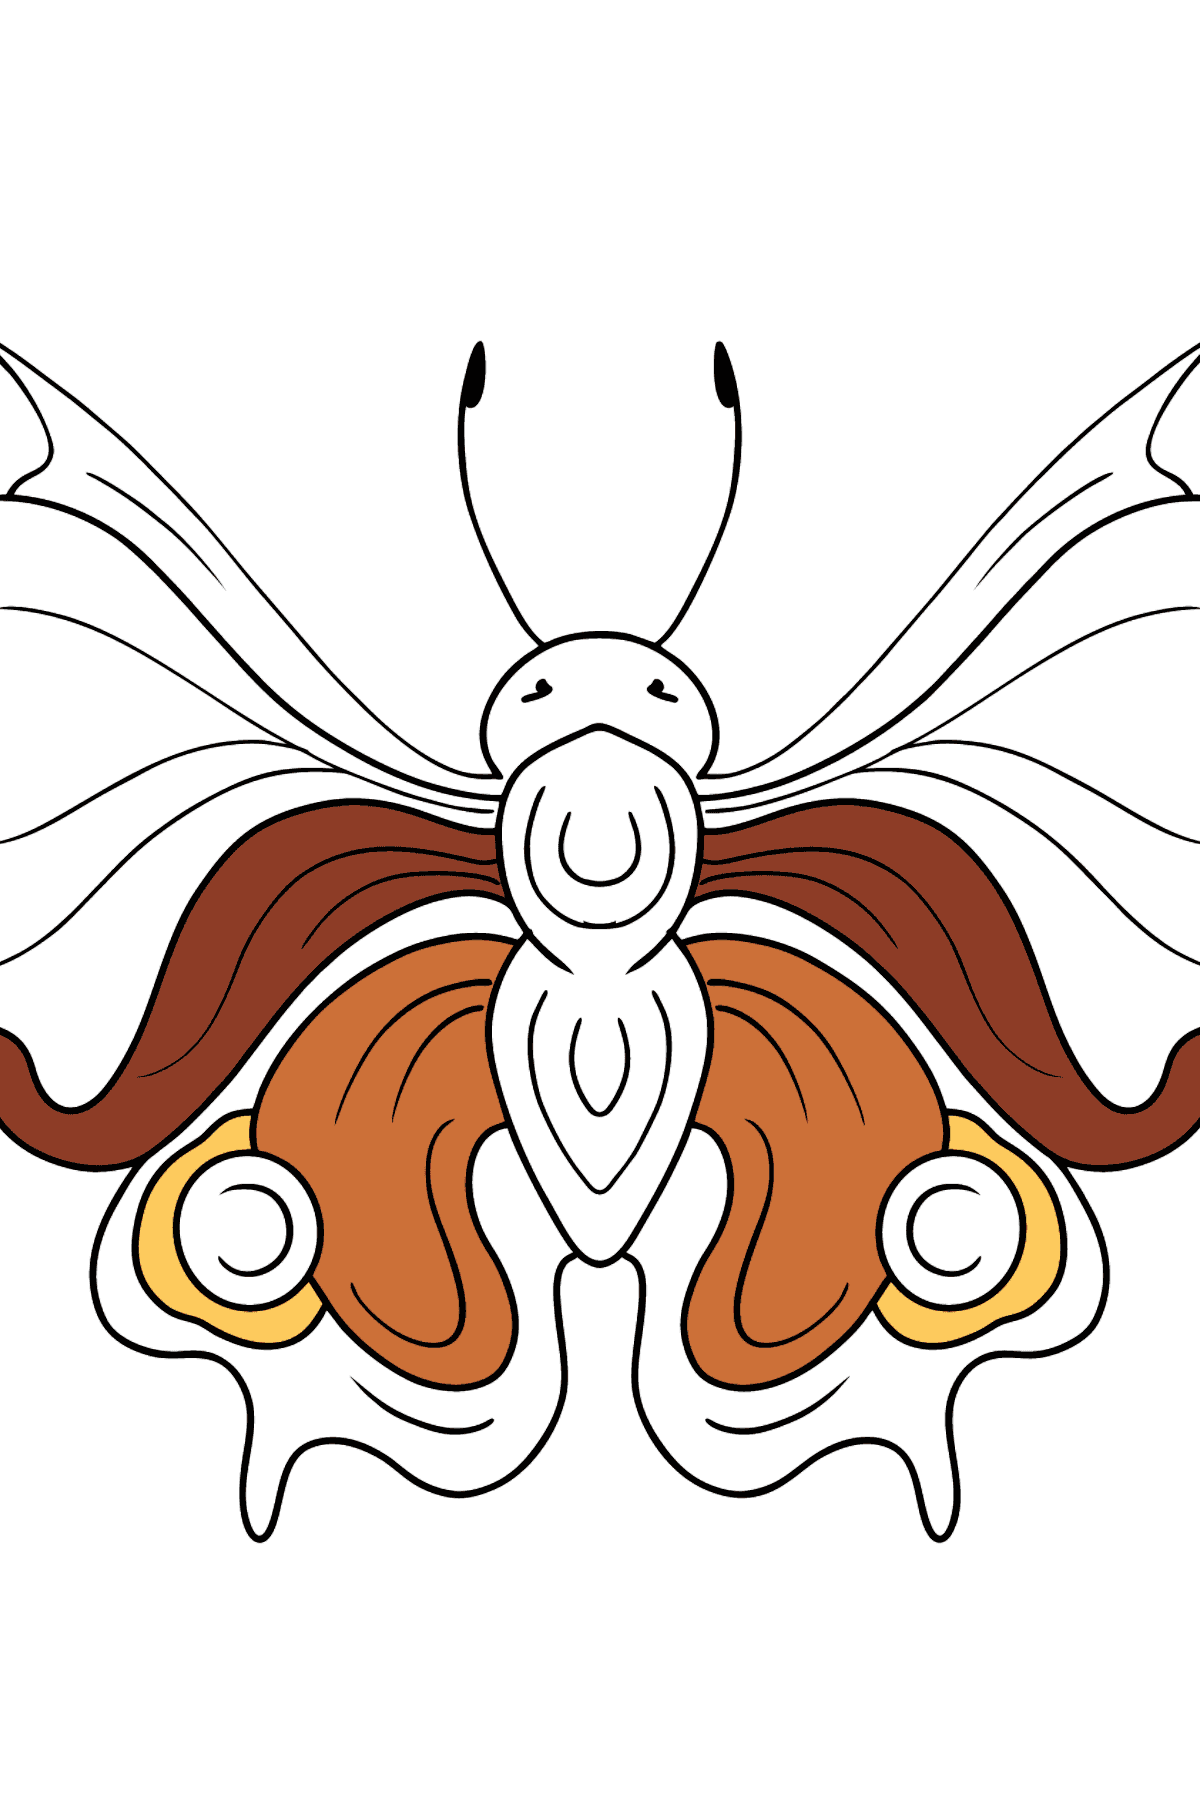 Kleurplaat pauw vlinder - kleurplaten voor kinderen